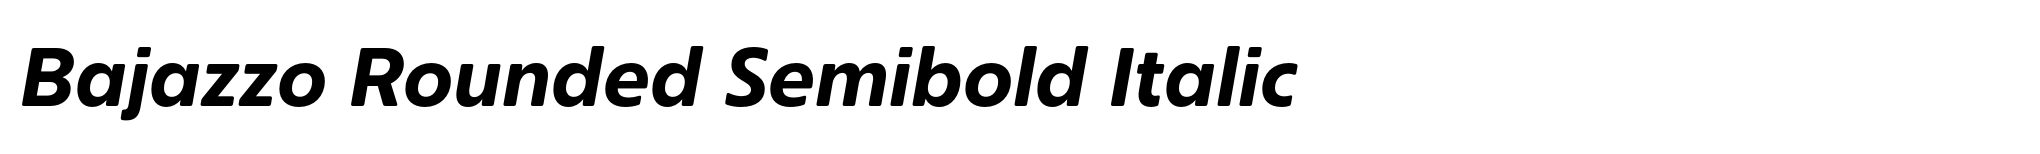 Bajazzo Rounded Semibold Italic image